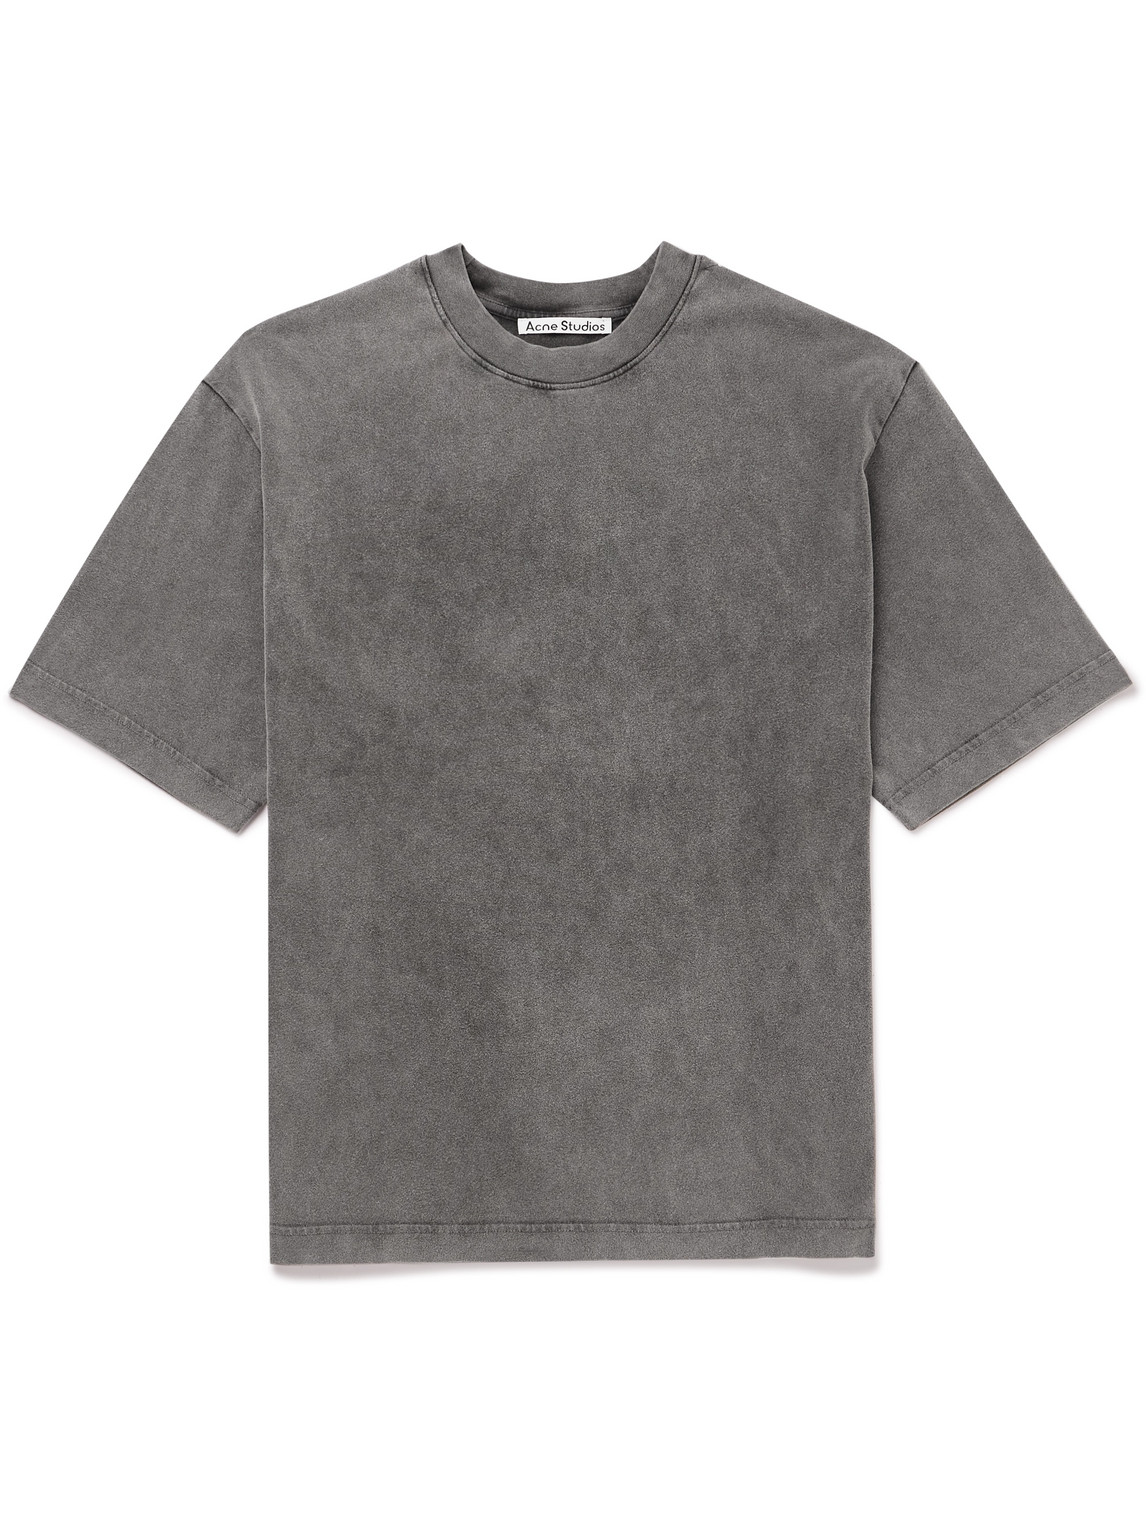 Acne Studios - Extorr Logo-Appliquéd Garment-Dyed Cotton-Jersey T-Shirt - Men - Black - L von Acne Studios